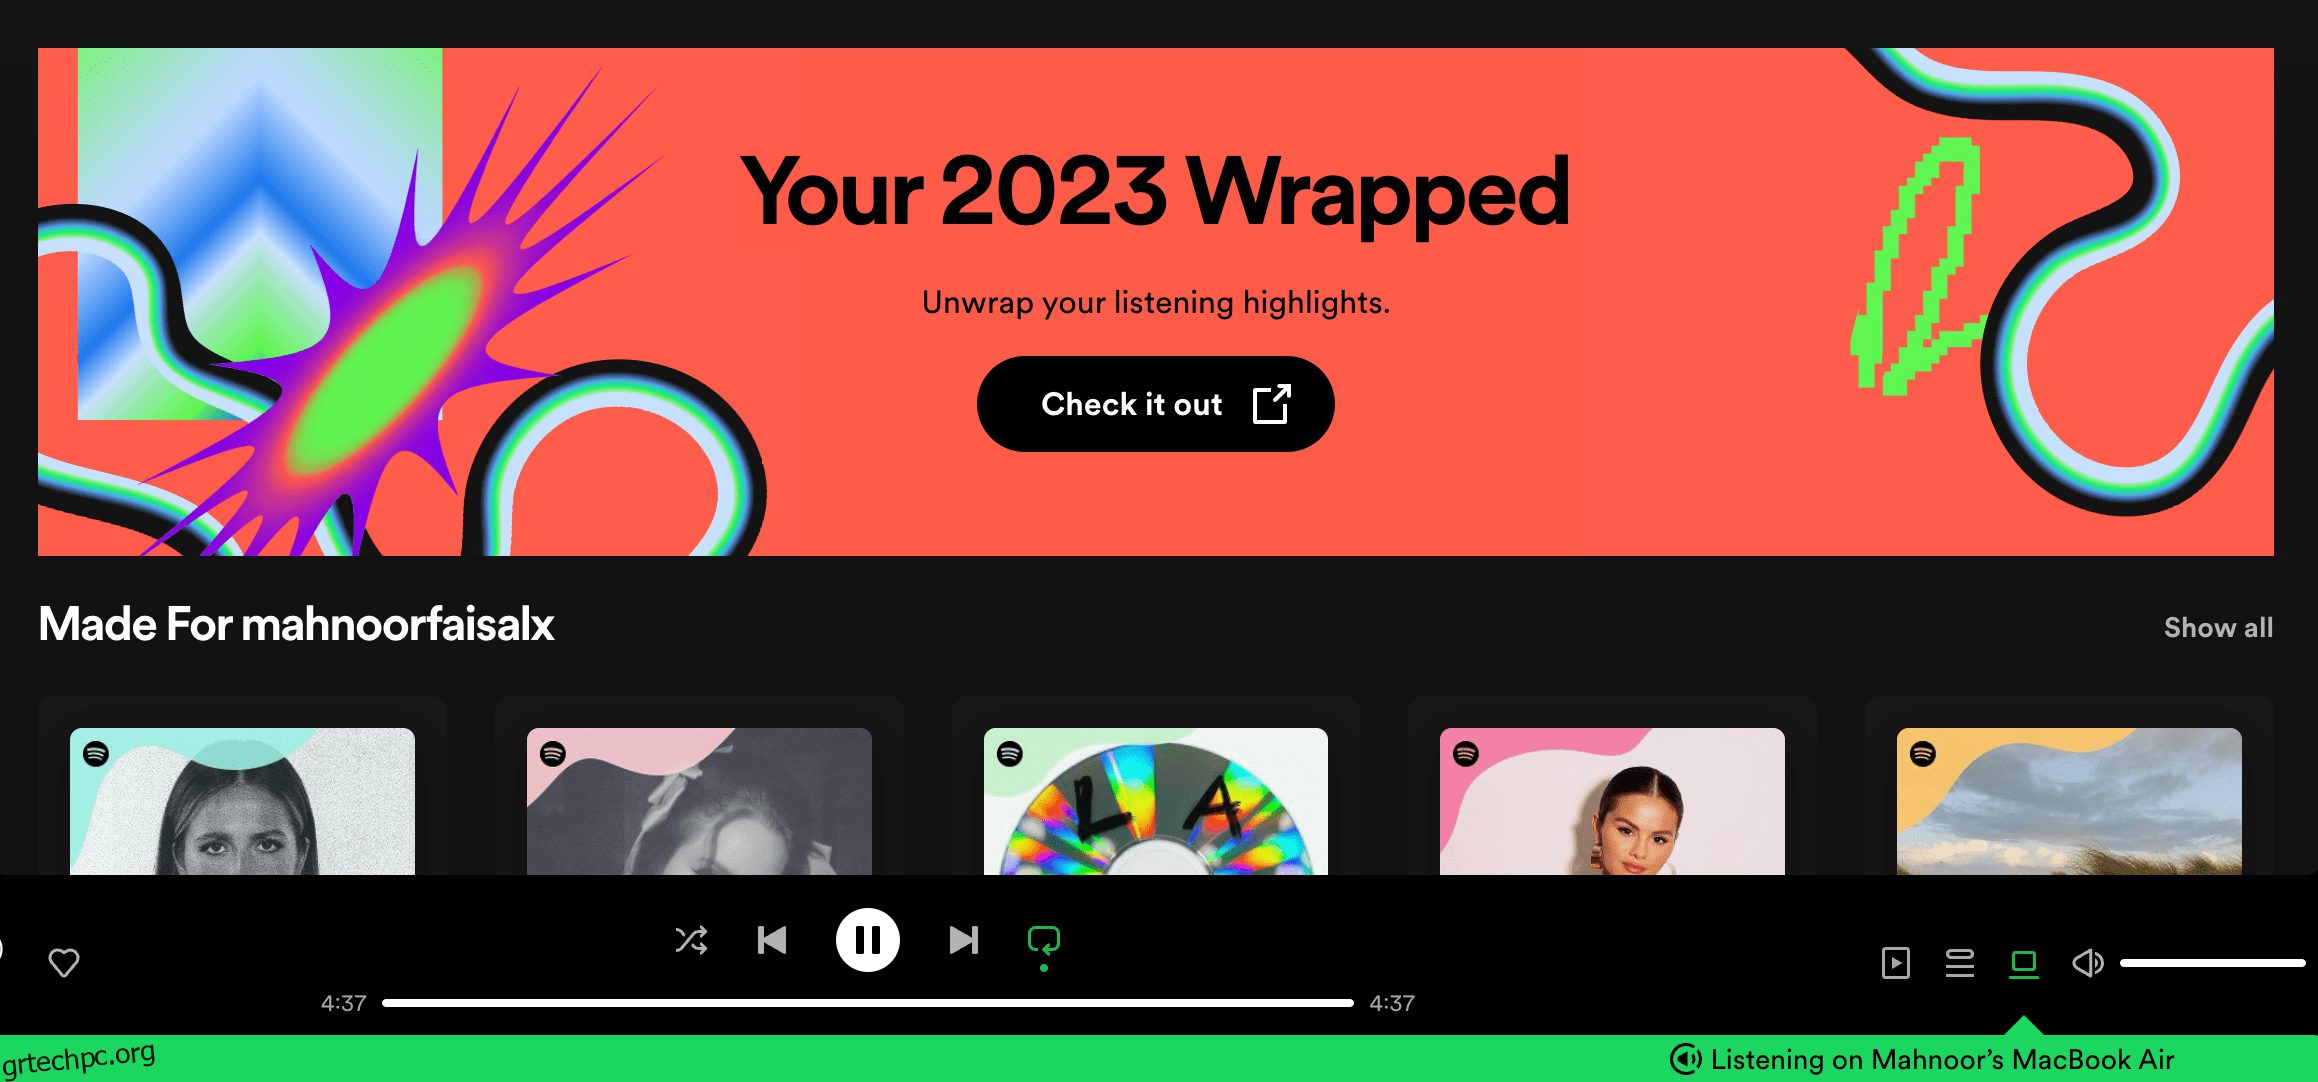 Έφτασε το Spotify Wrapped 2023!  Δείτε πώς μπορείτε να δείτε τα στατιστικά σας